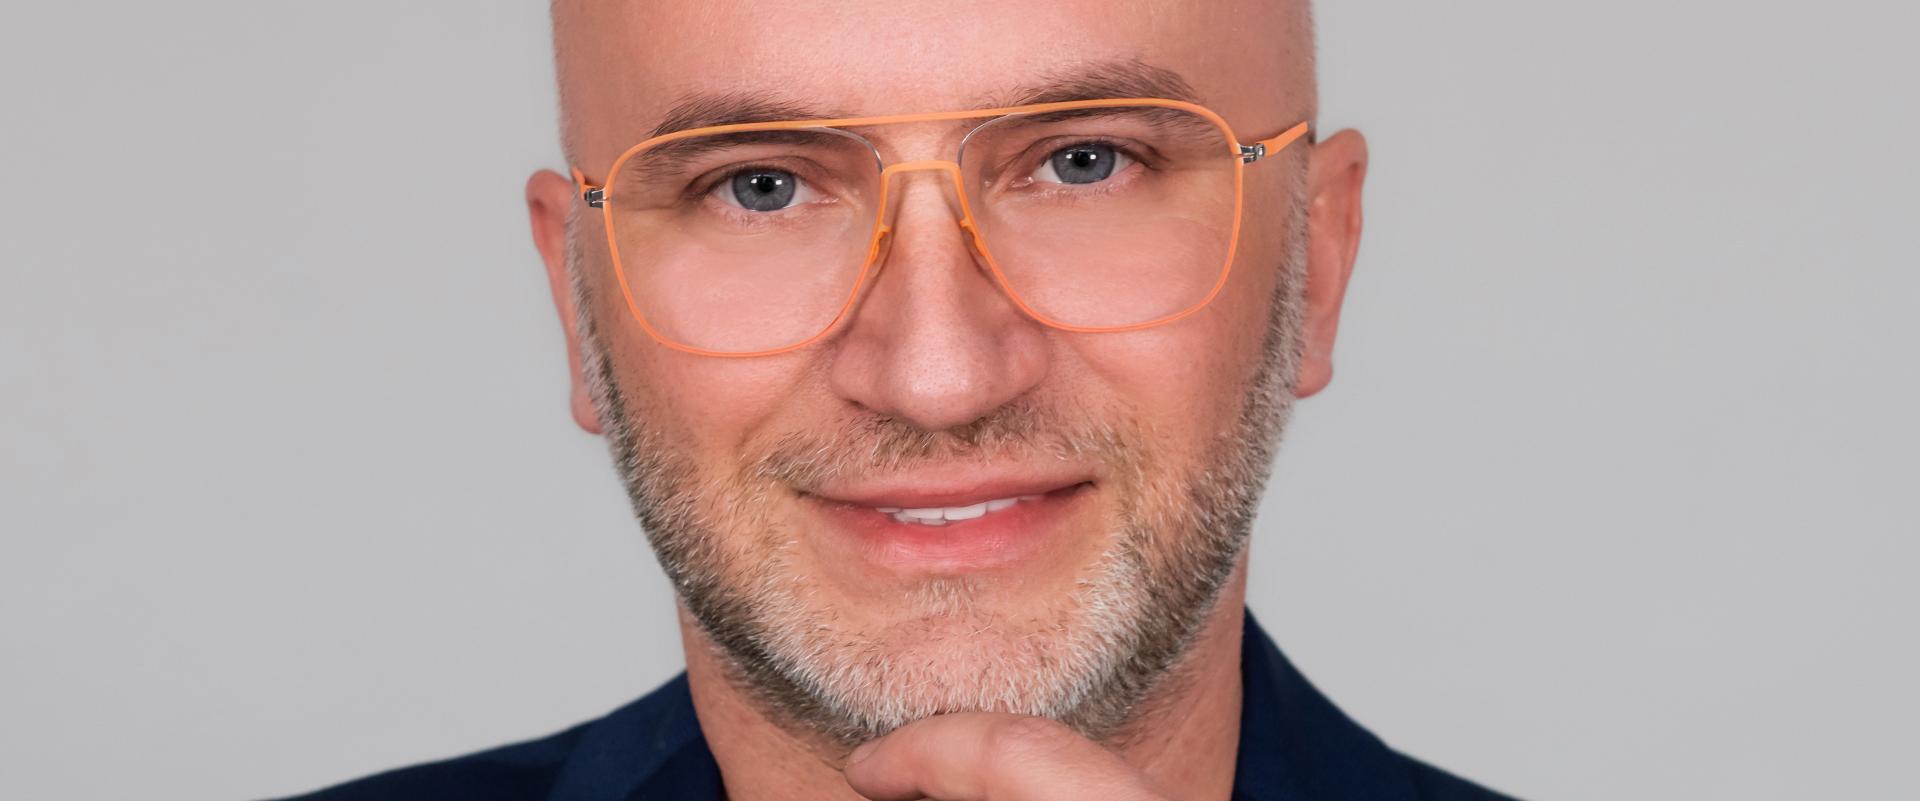 Dr Piotr Nowaczyk o procesie tworzenia kosmetyków